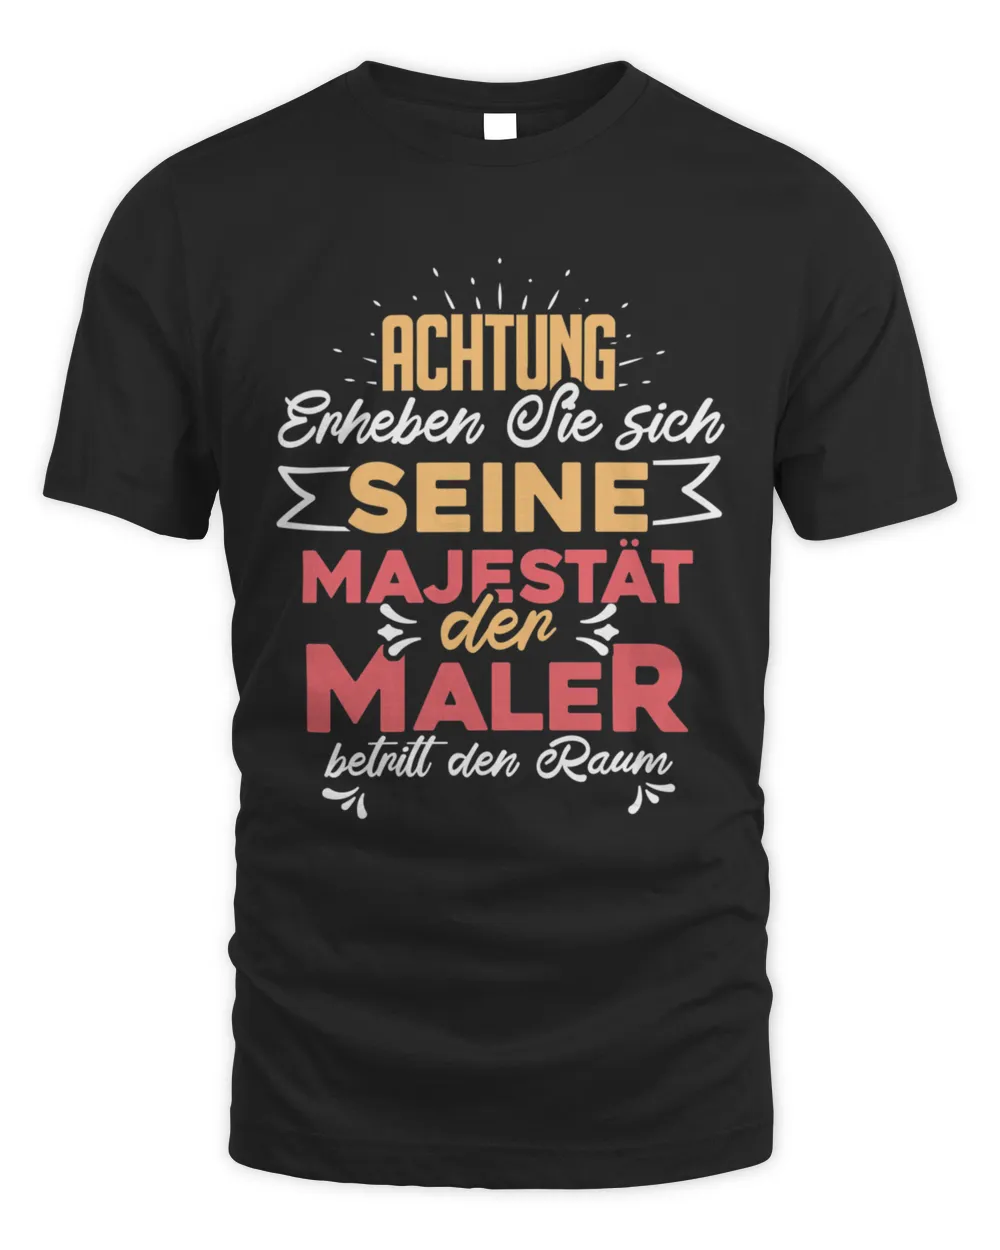 ACHTUNG SEINE MAJESTAT DER MALER T-Shirt